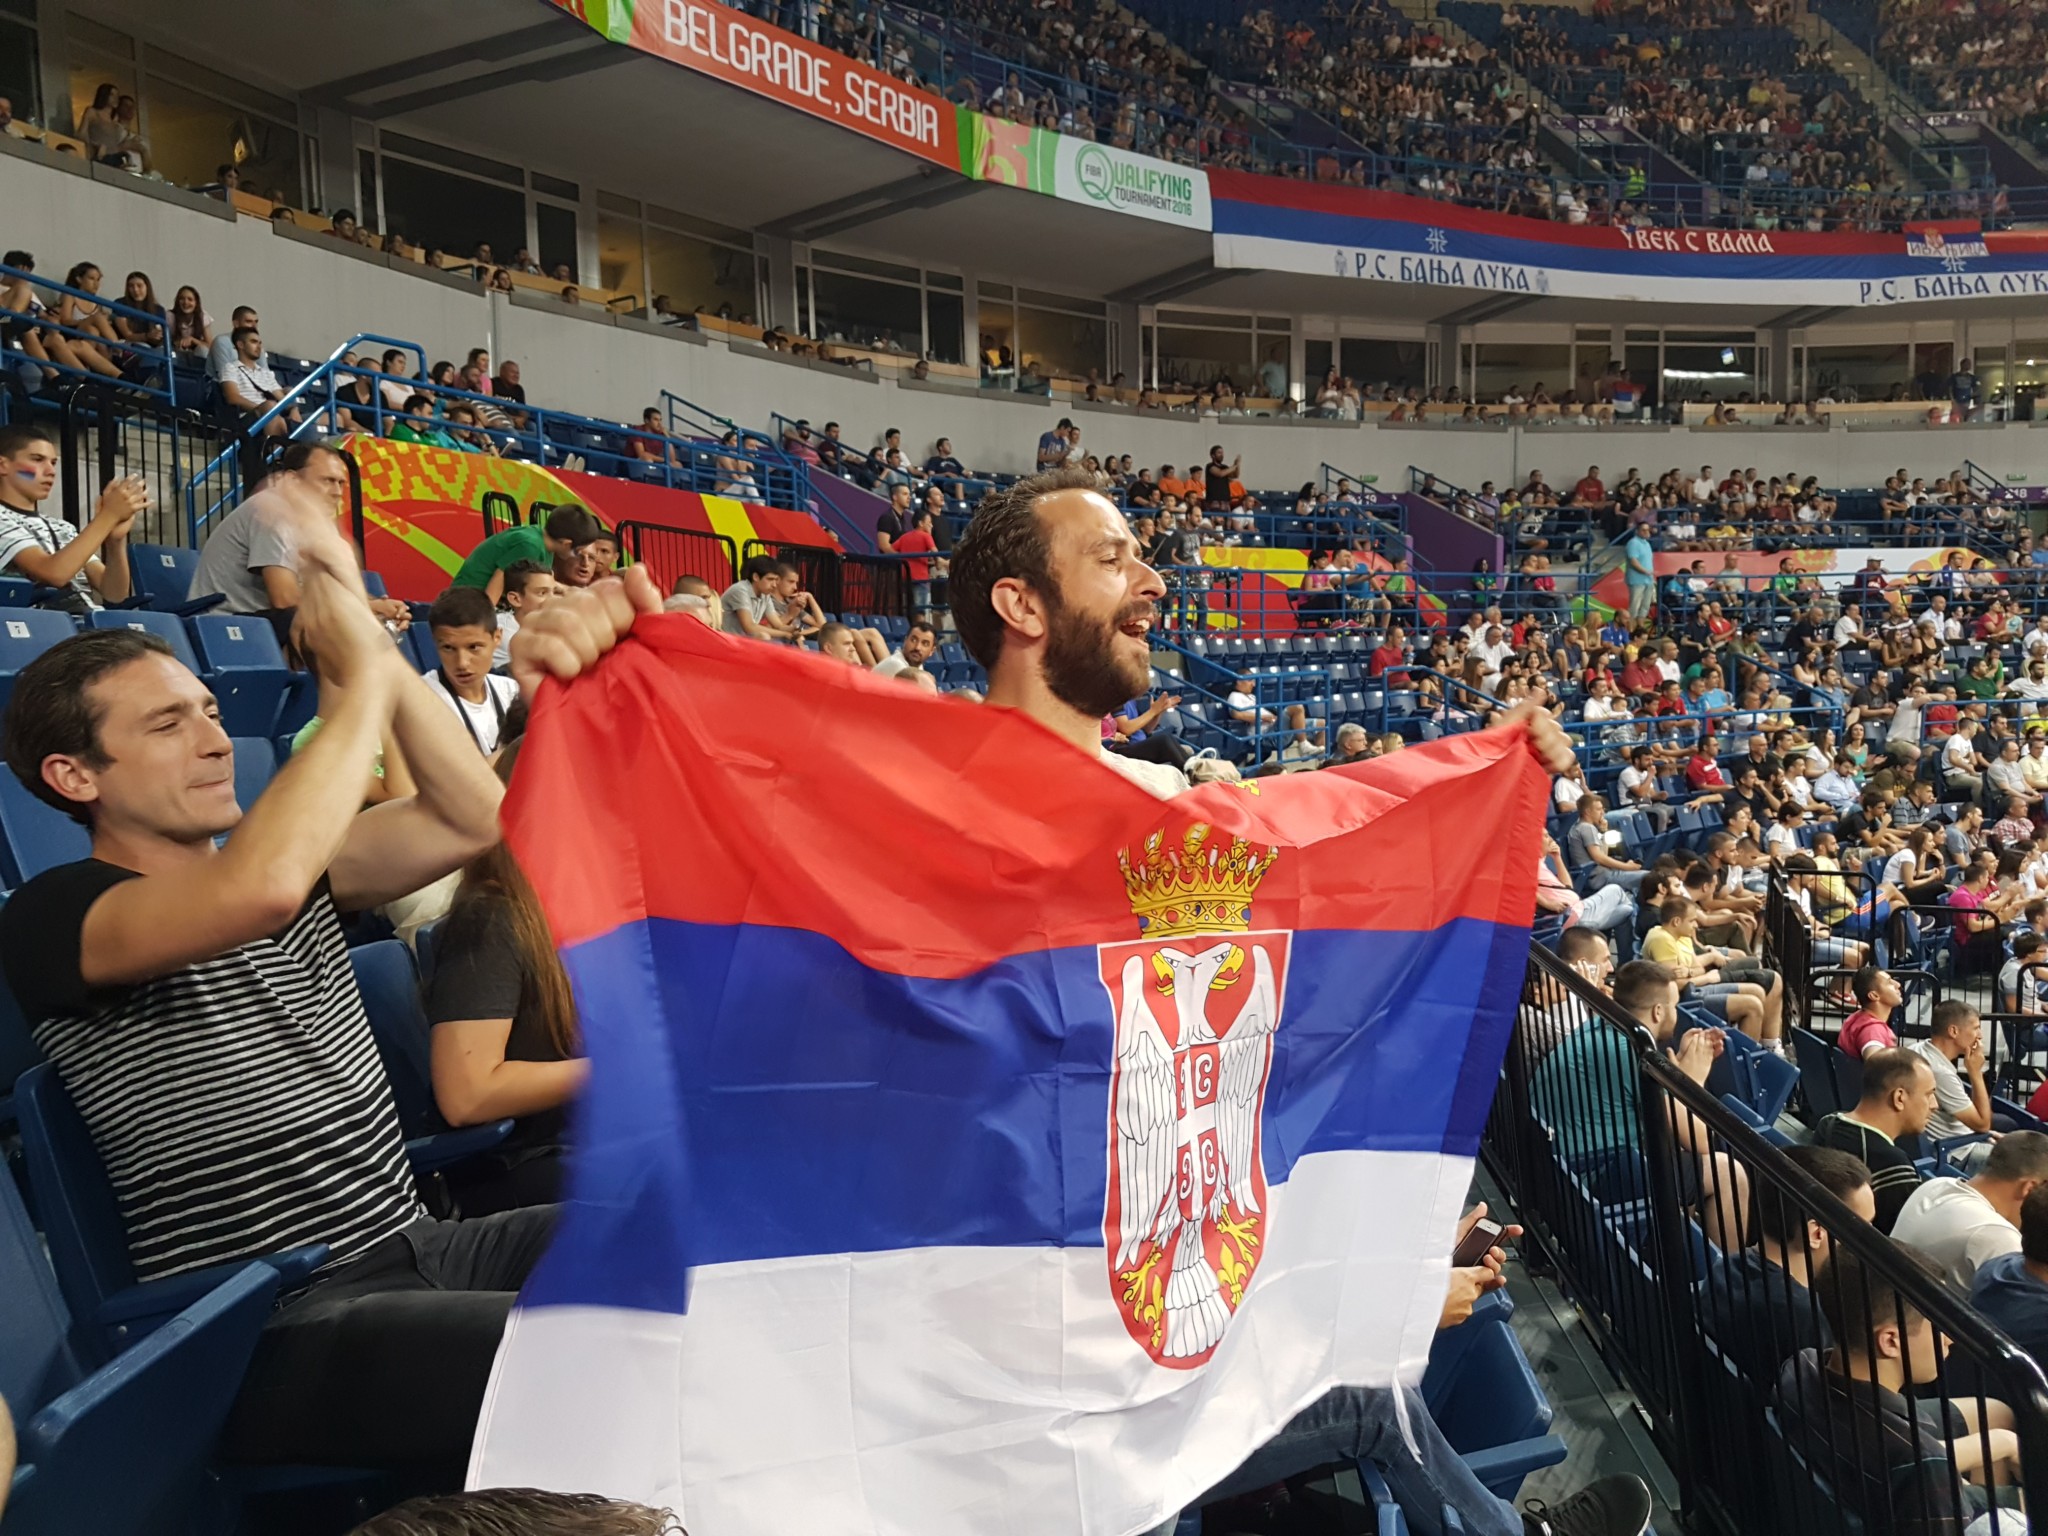 Chris Representing Serbia